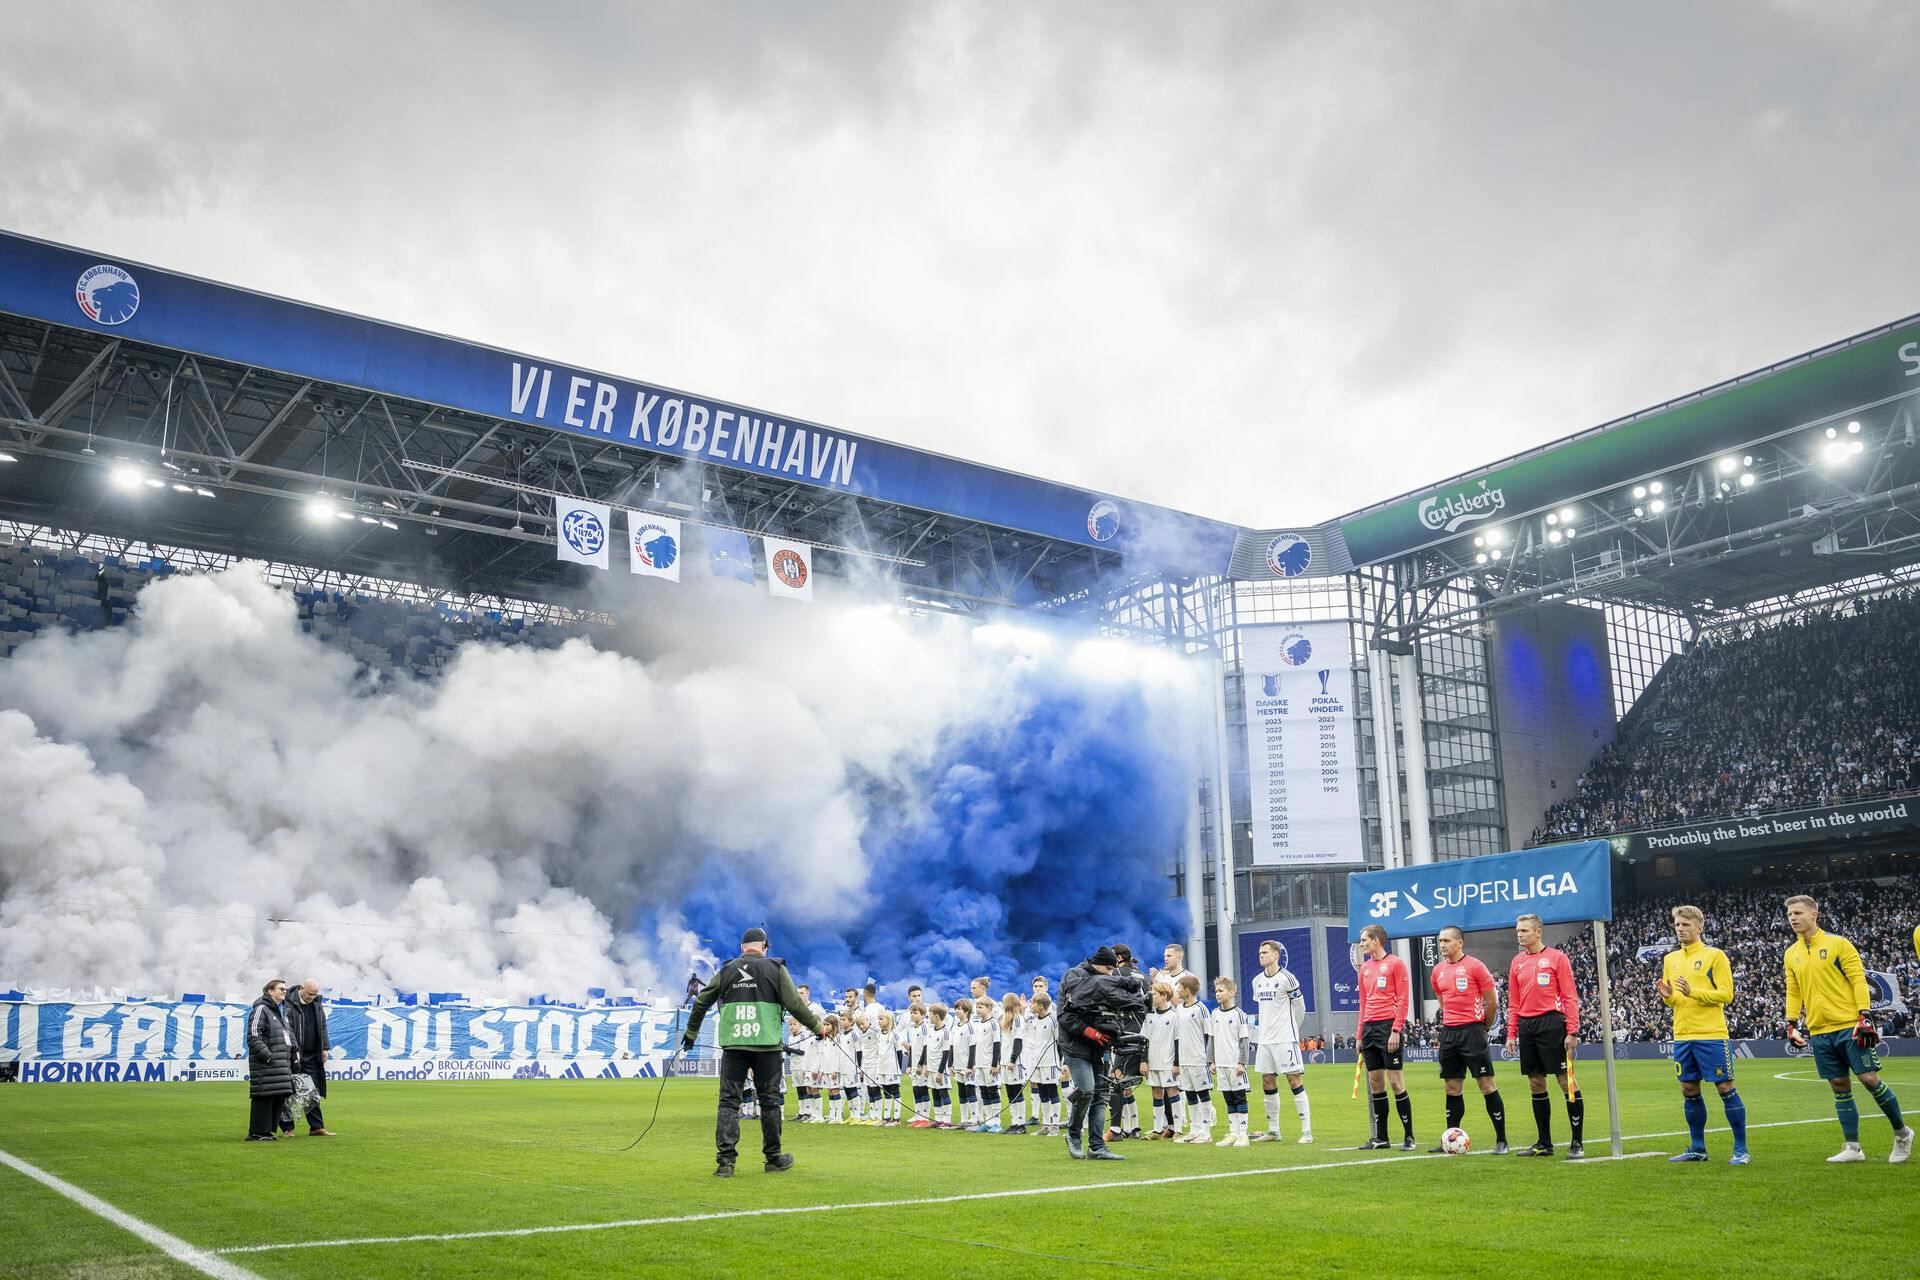 3F Superliga-kampen mellem FC København og Brøndby IF i Parken 